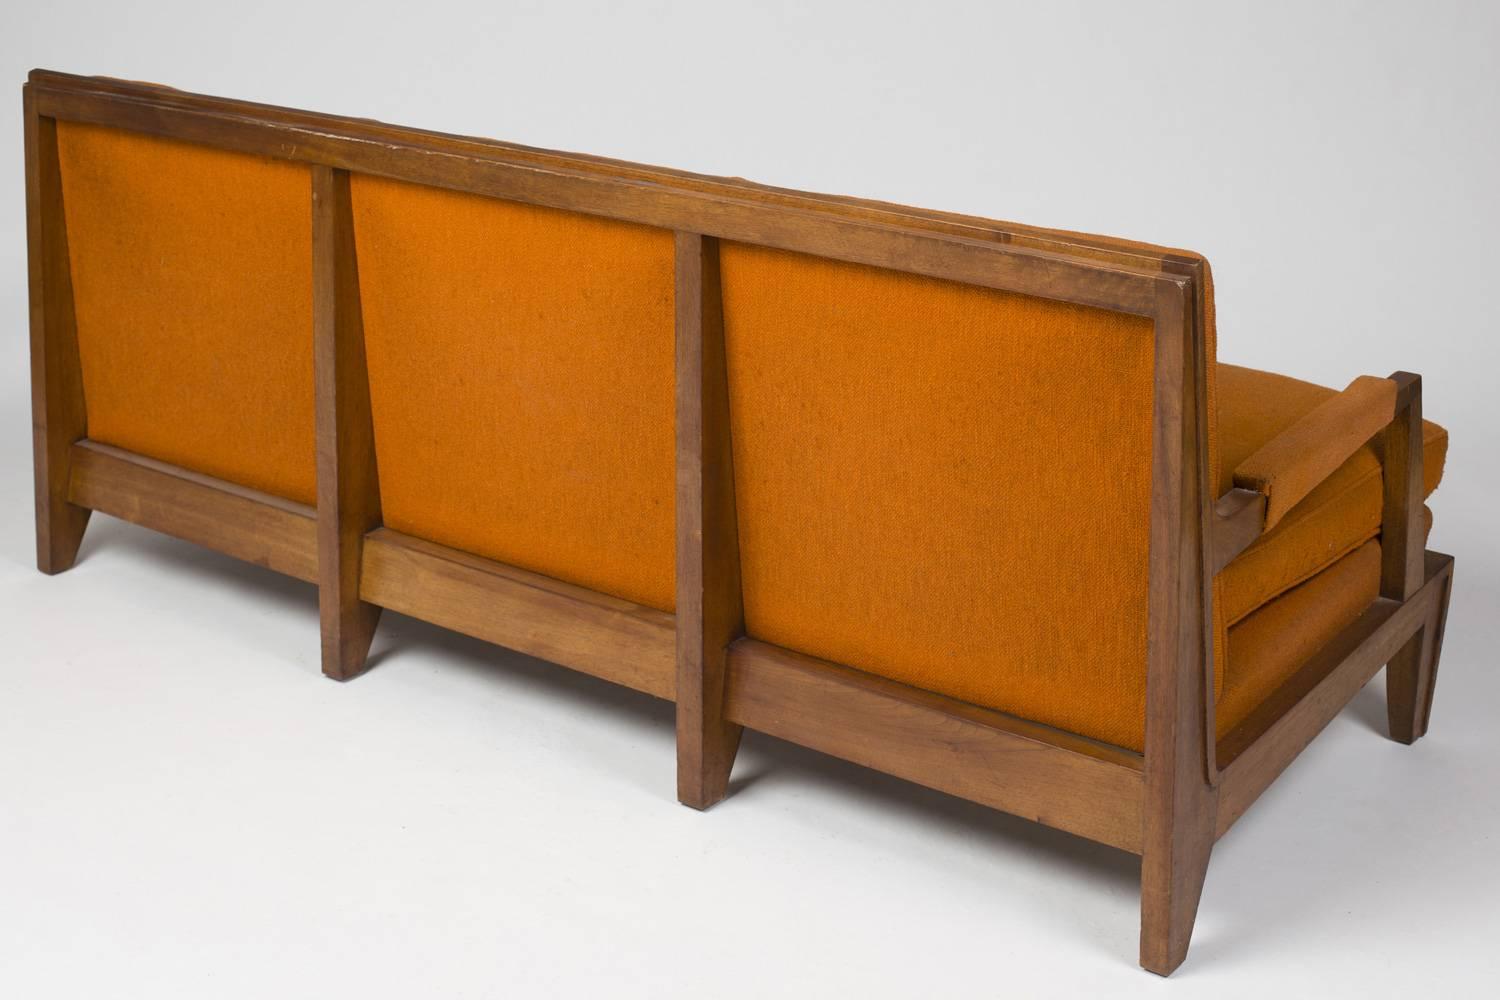 Seltenes Dreisitzer-Sofa aus Nussbaum aus den 1940er Jahren.
Elegantes Design und hochgradig raffinierte Oberflächen.
Die Struktur ist in gutem Zustand, die Polsterung muss neu gemacht werden.